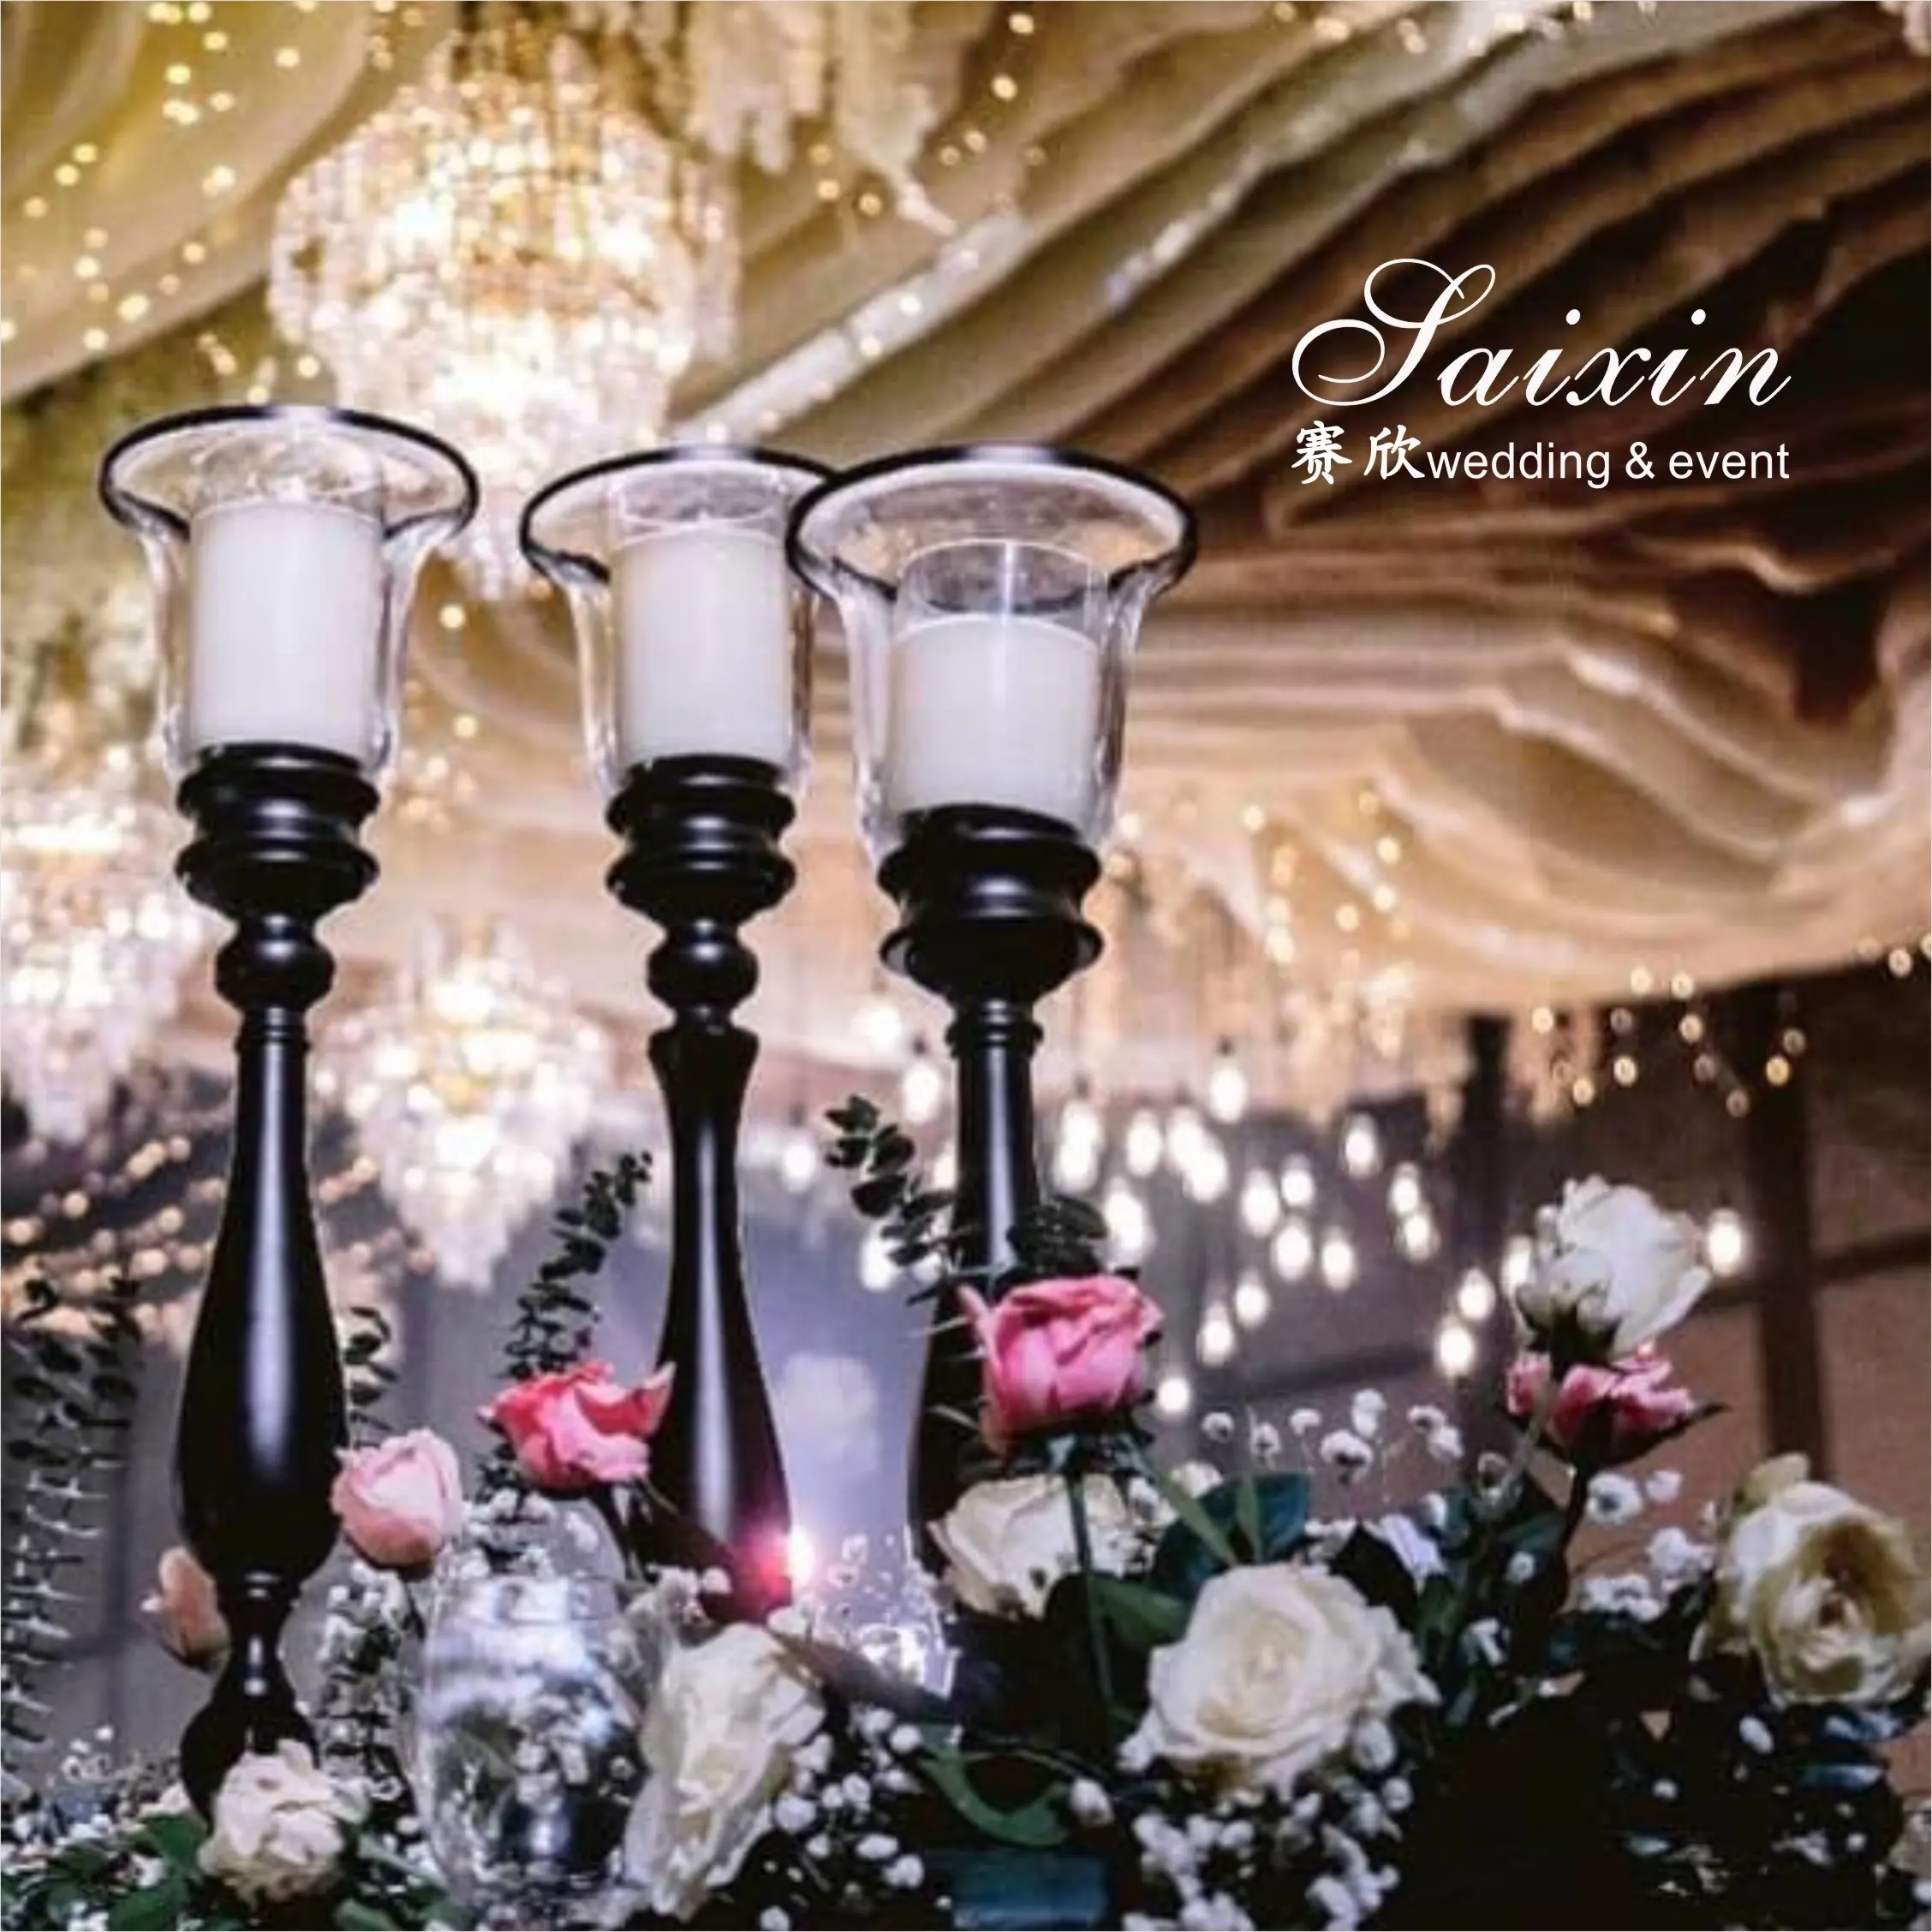 新しいデザインの結婚式の装飾背の高いテーブルローソク足3個メタルブラックキャンドルホルダー